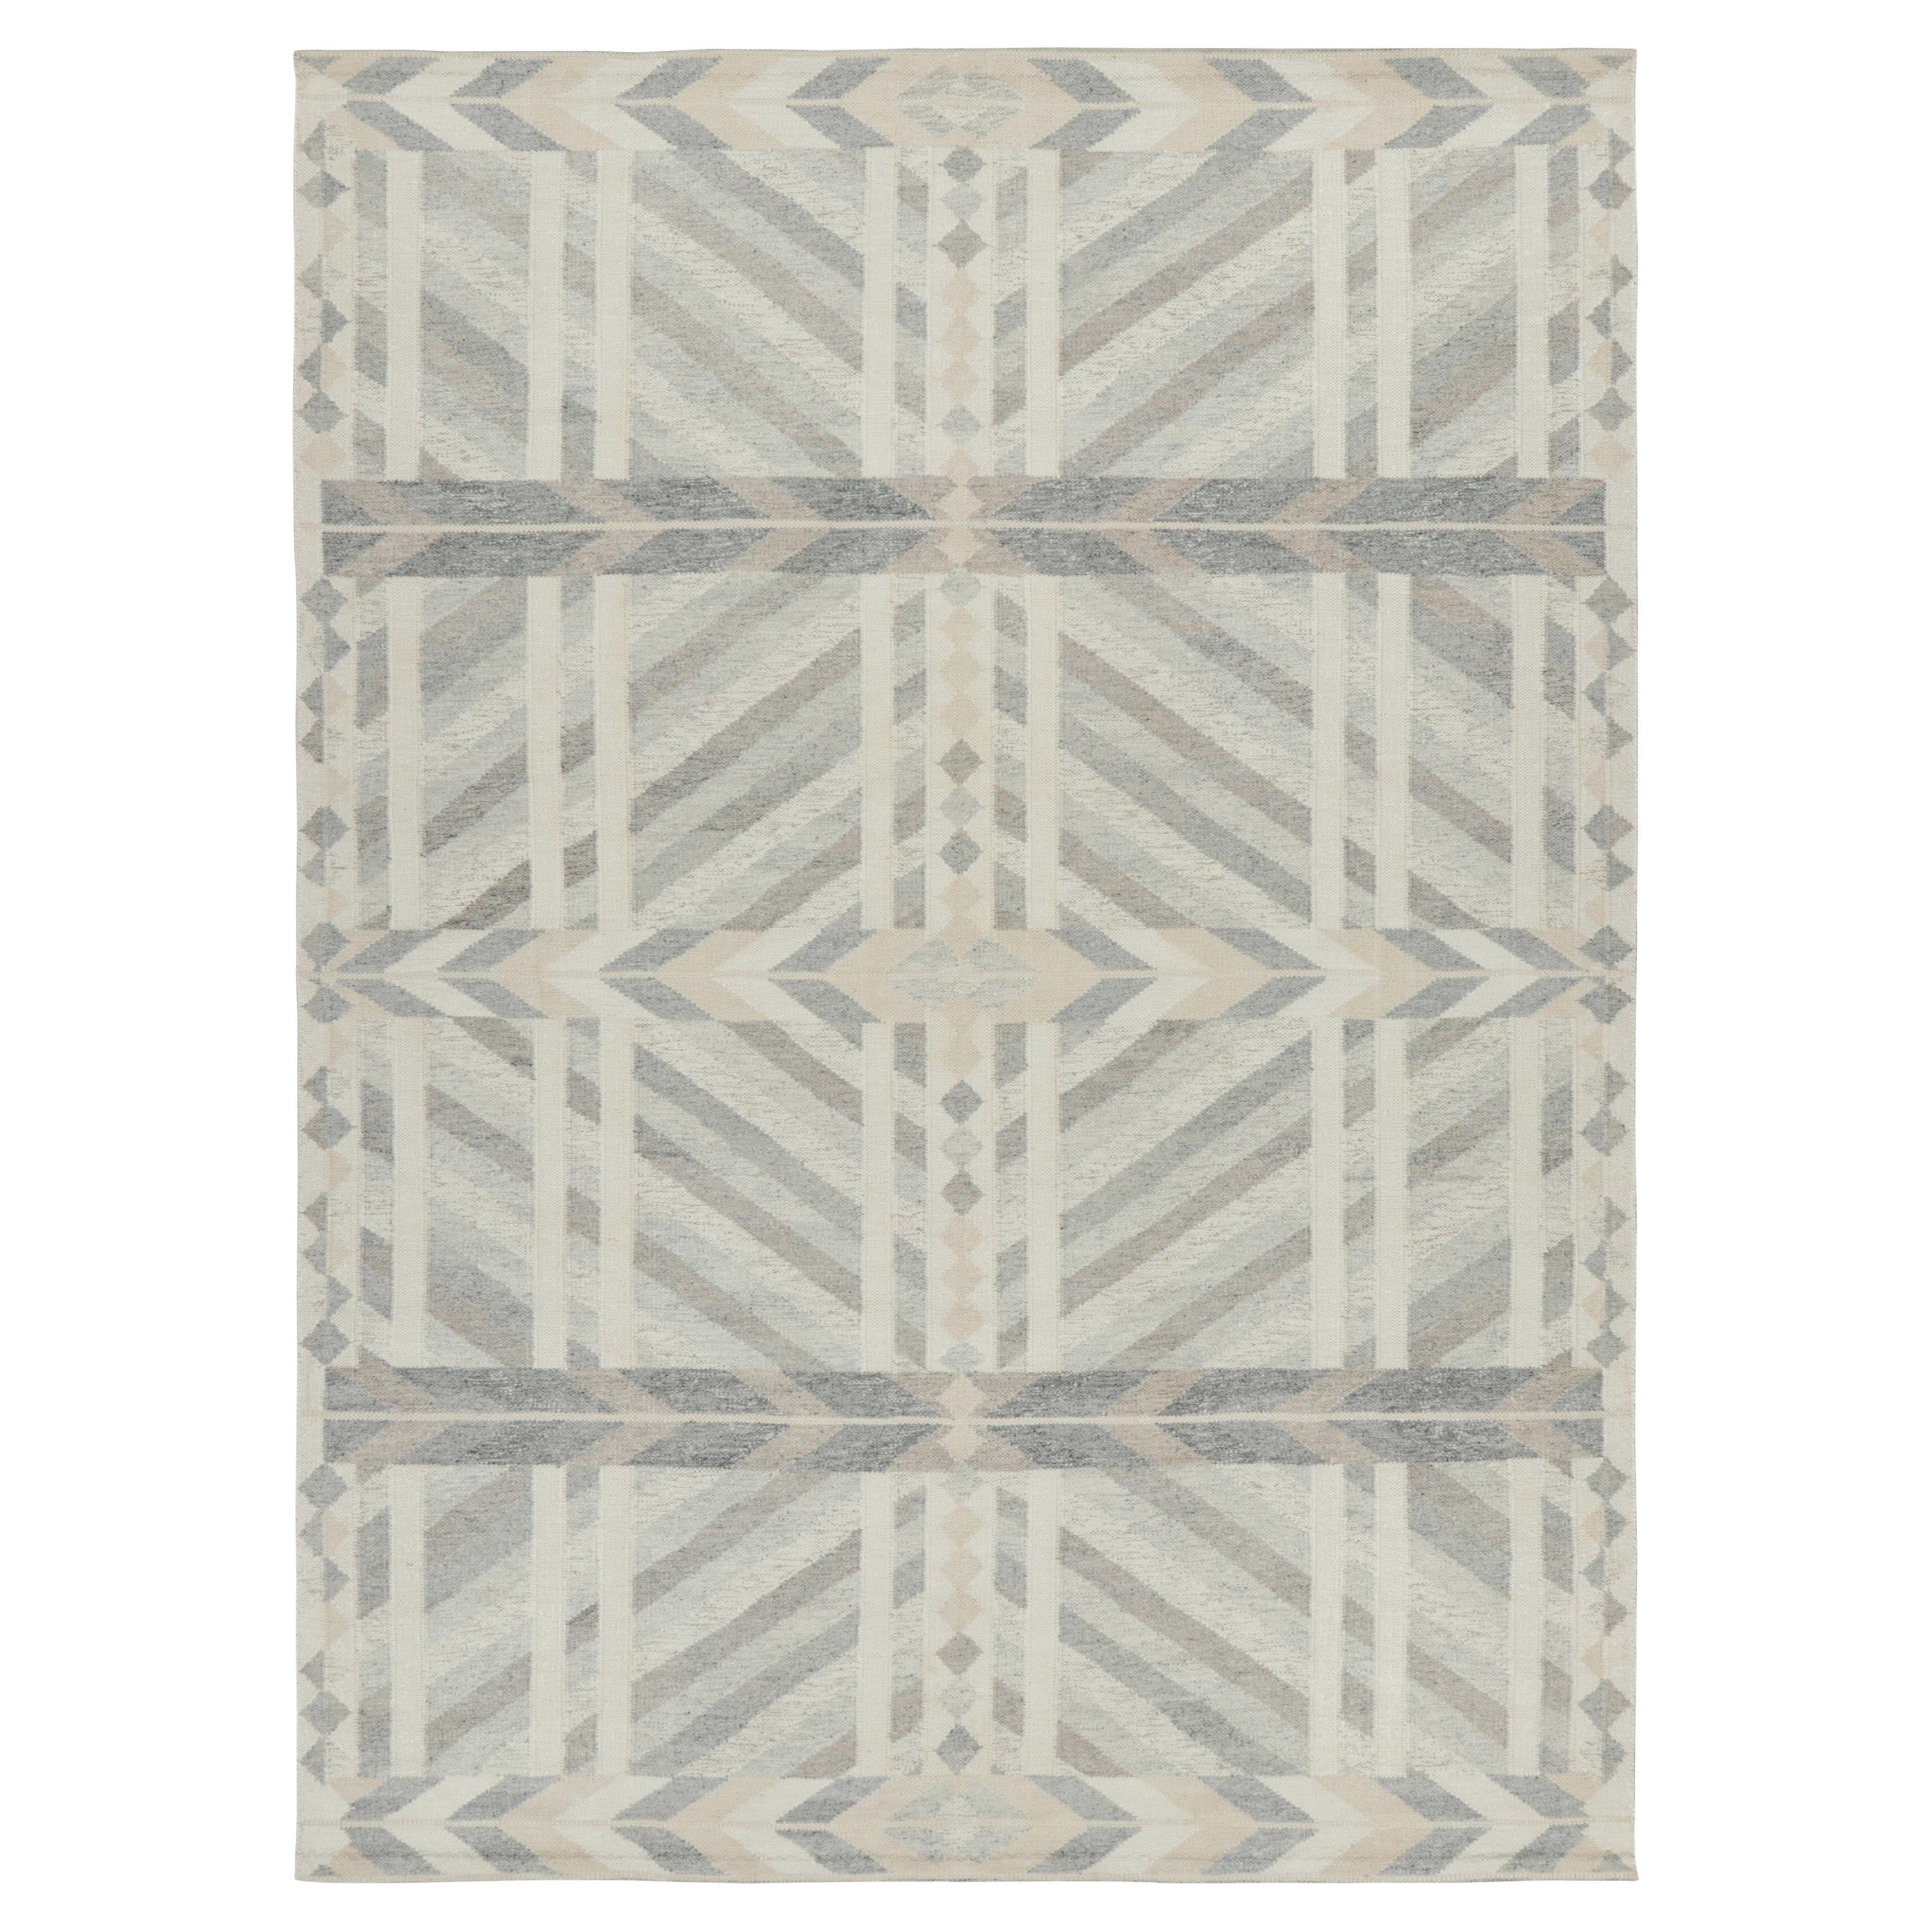 Rug & Kilim's Scandinavian Style Rug in Gray Beige and White Geometric Patterns (tapis de style scandinave à motifs géométriques gris, beige et blancs) en vente